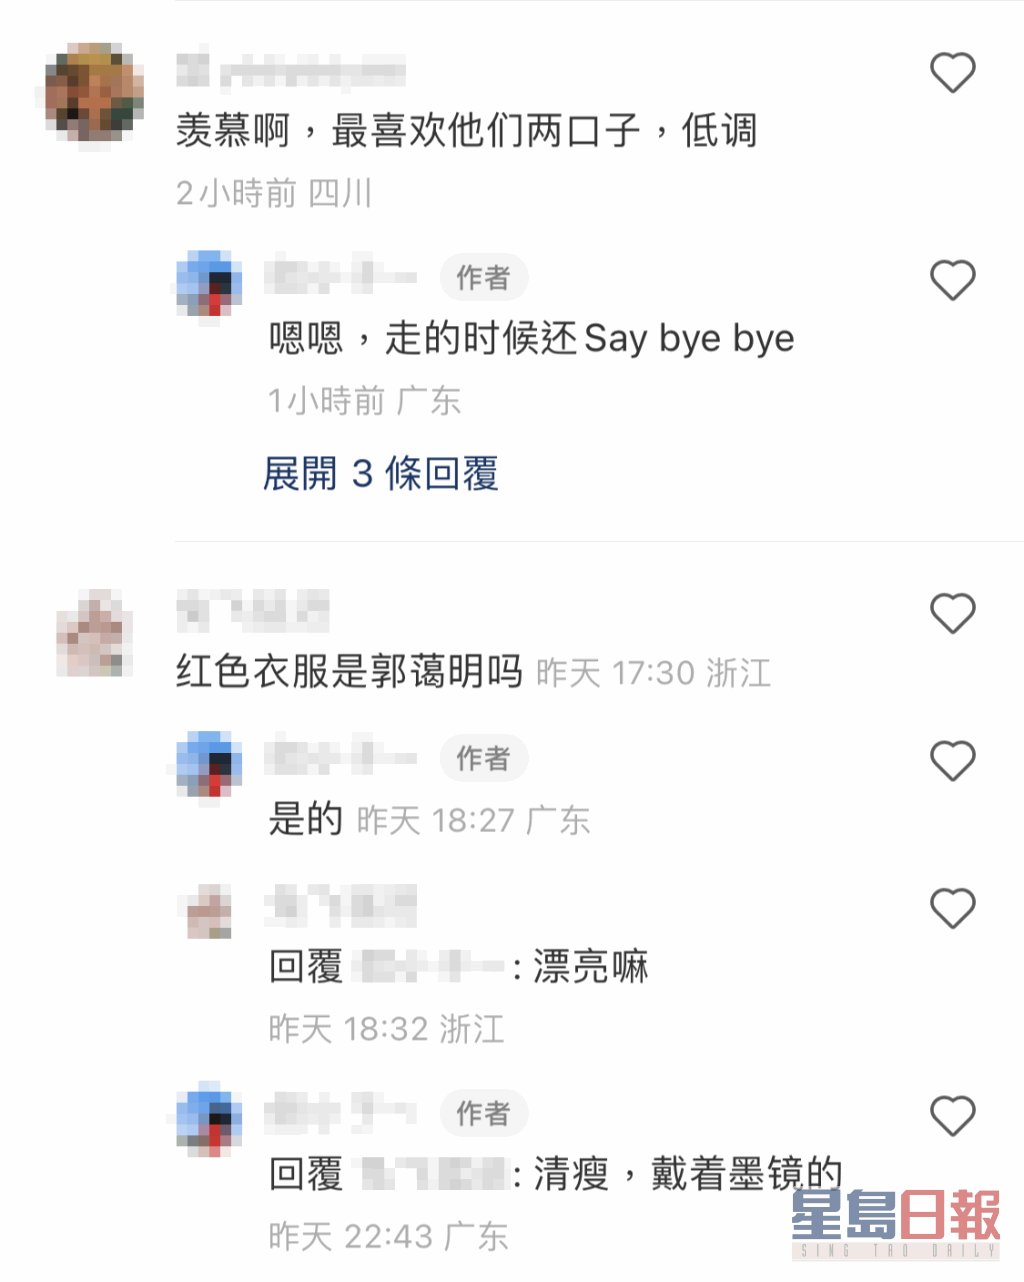 不少网民留言表示羡慕，贴相的网民还透露刘青云夫妇临别时还跟她说Bye bye。